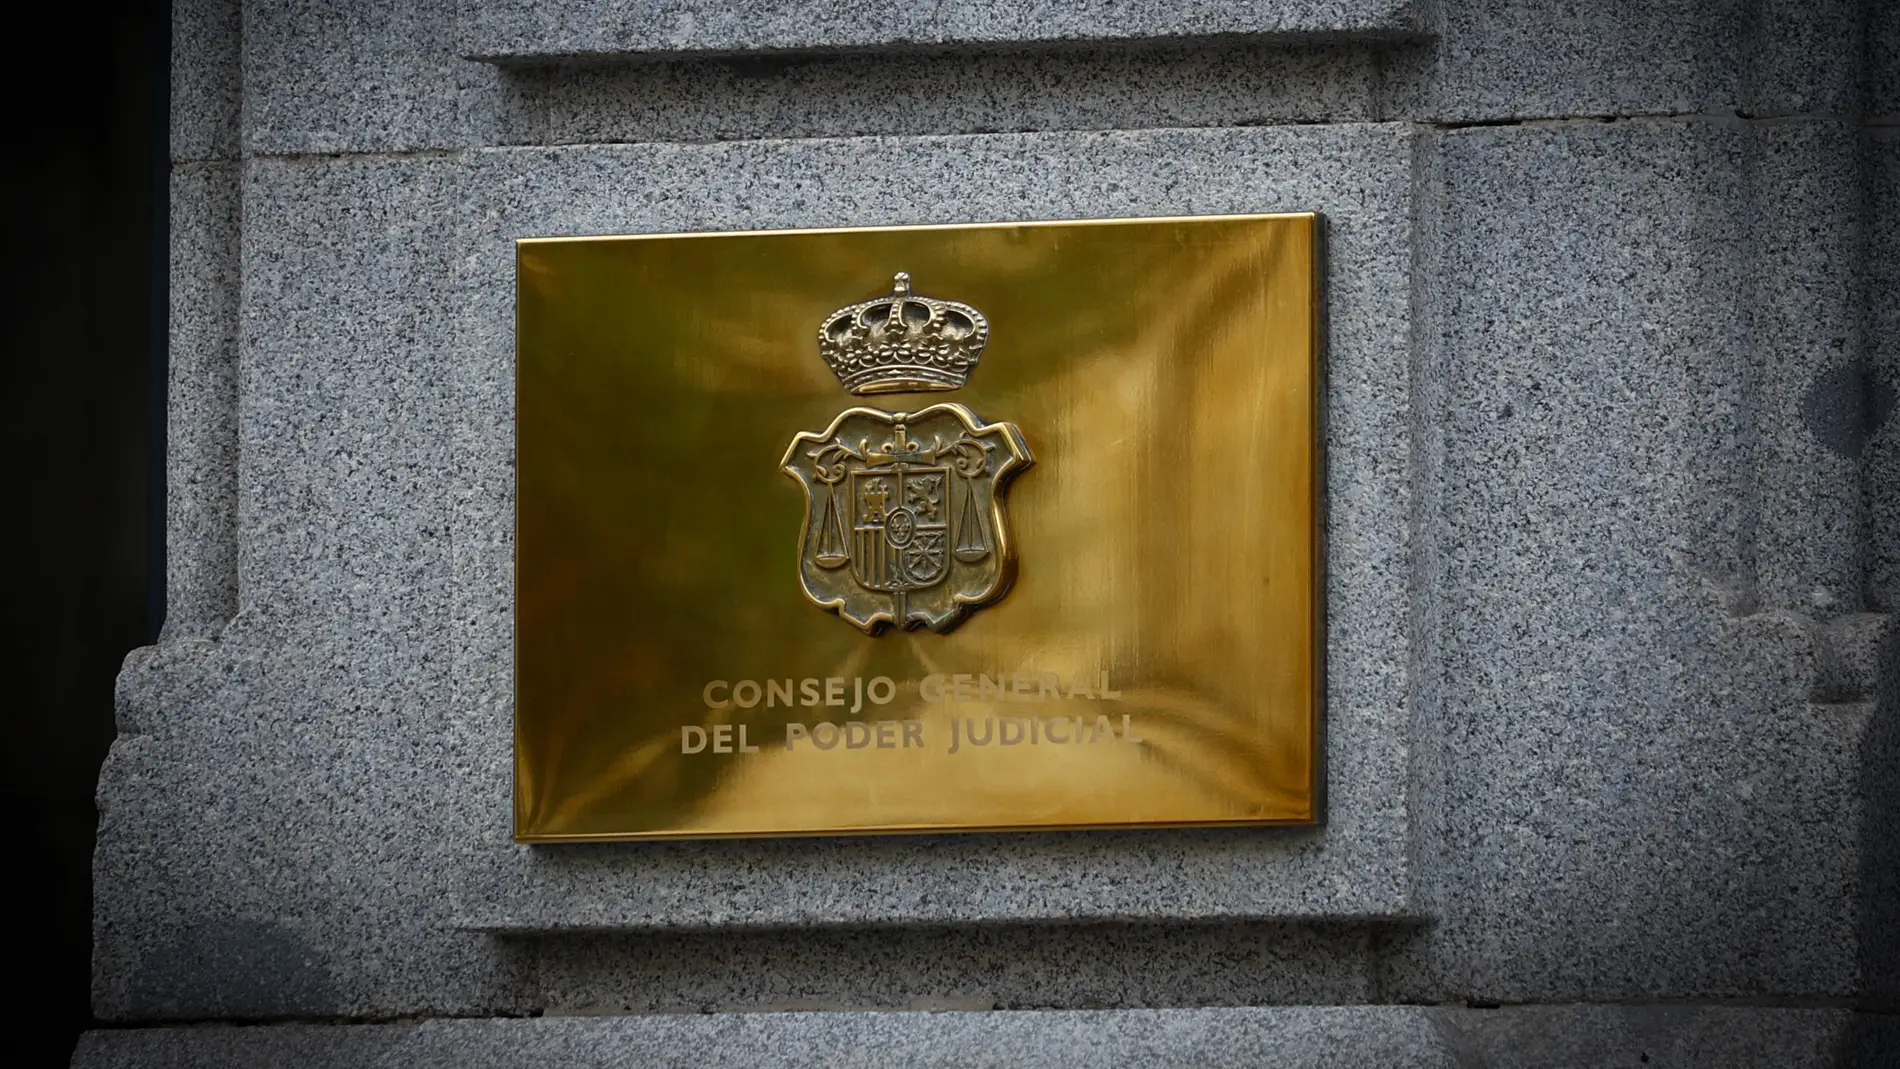 Imagen de la placa de la fachada de la sede del Consejo General del Poder Judicial (CGPJ)